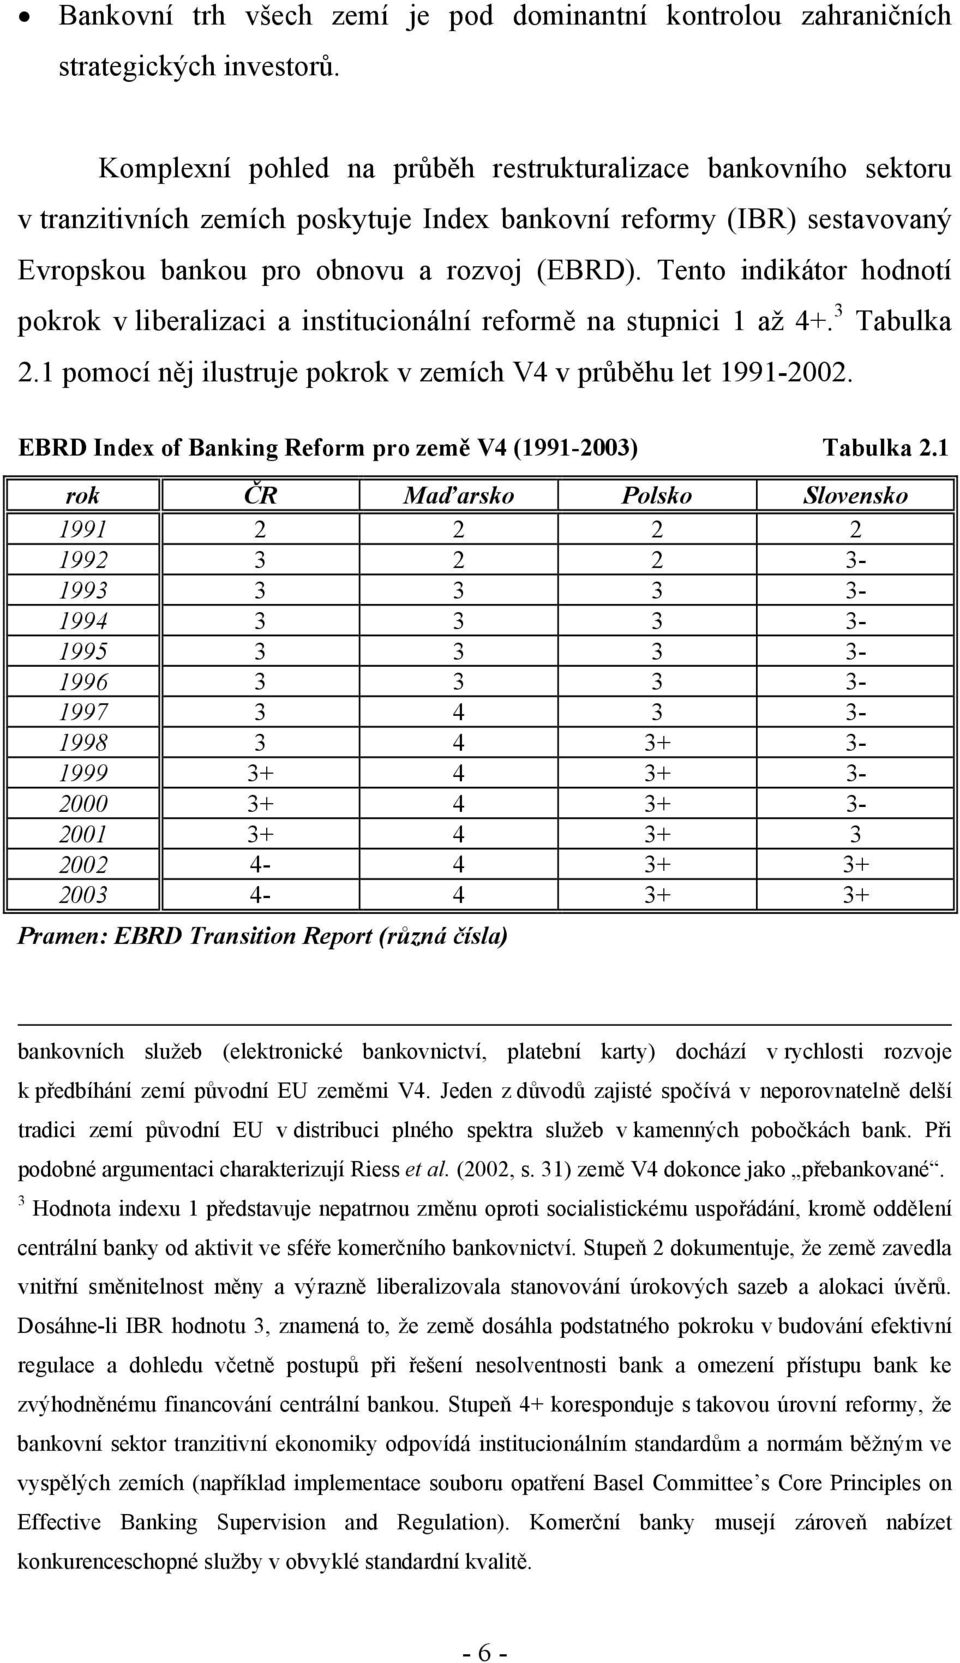 Tento indikátor hodnotí pokrok v liberalizaci a institucionální reformě na stupnici 1 až 4+. 3 Tabulka 2.1 pomocí něj ilustruje pokrok v zemích V4 v průběhu let 1991-2002.